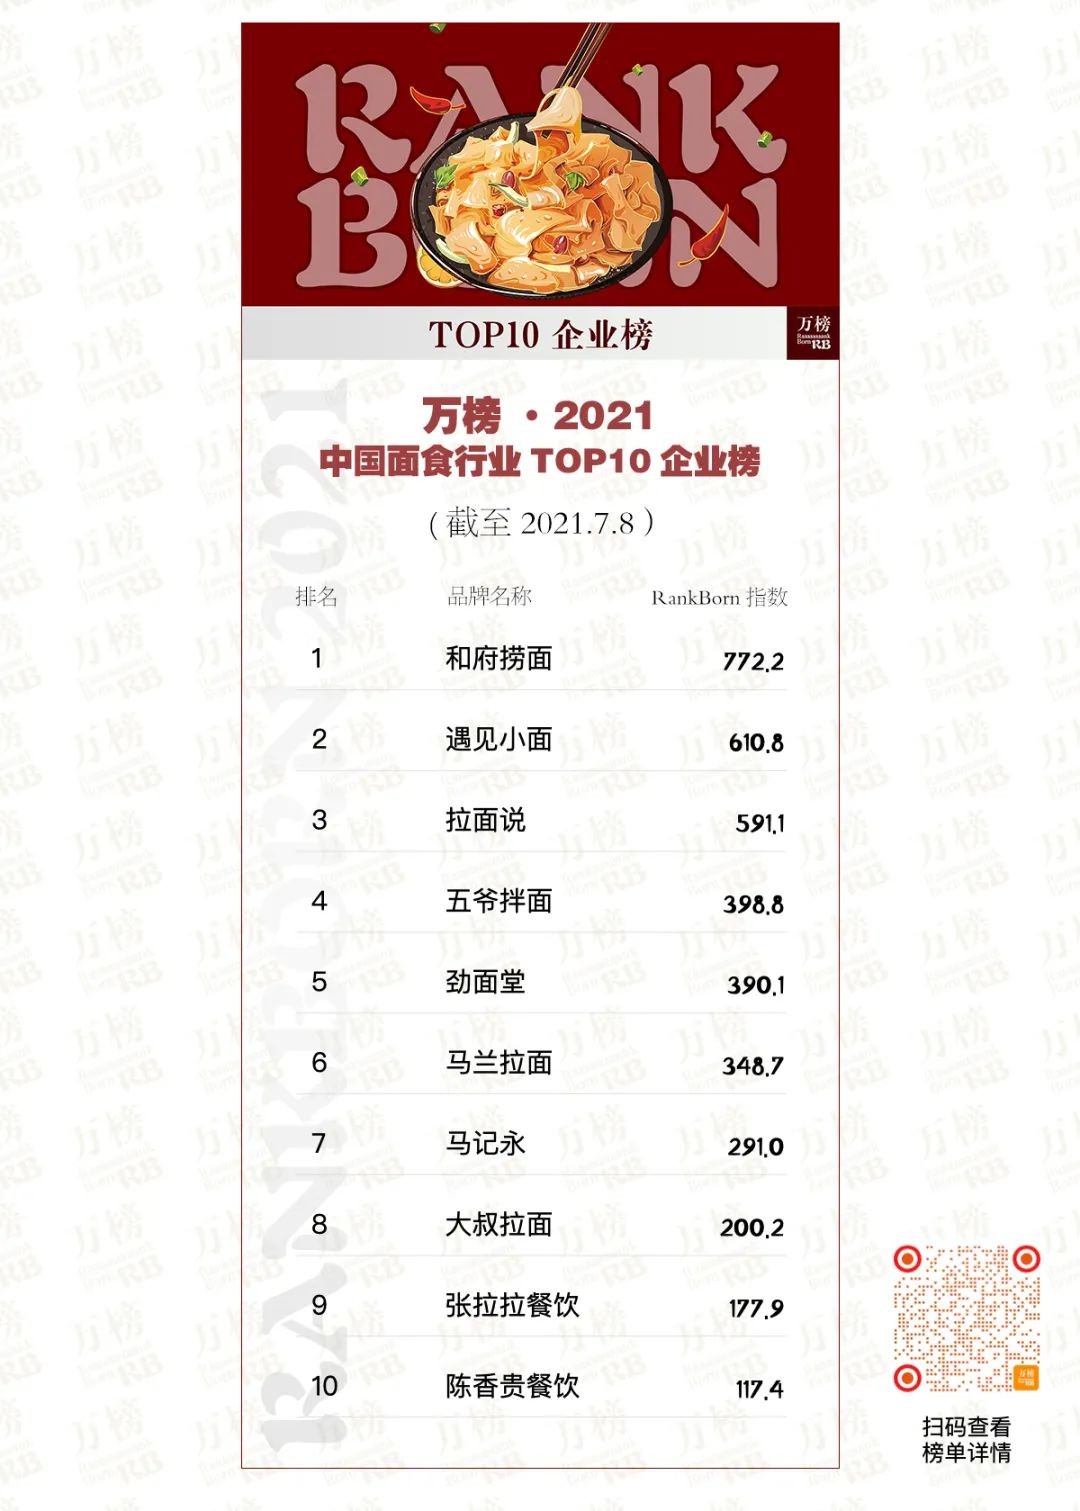 大叔拉面荣获万榜·2021中国面食行业TOP前十